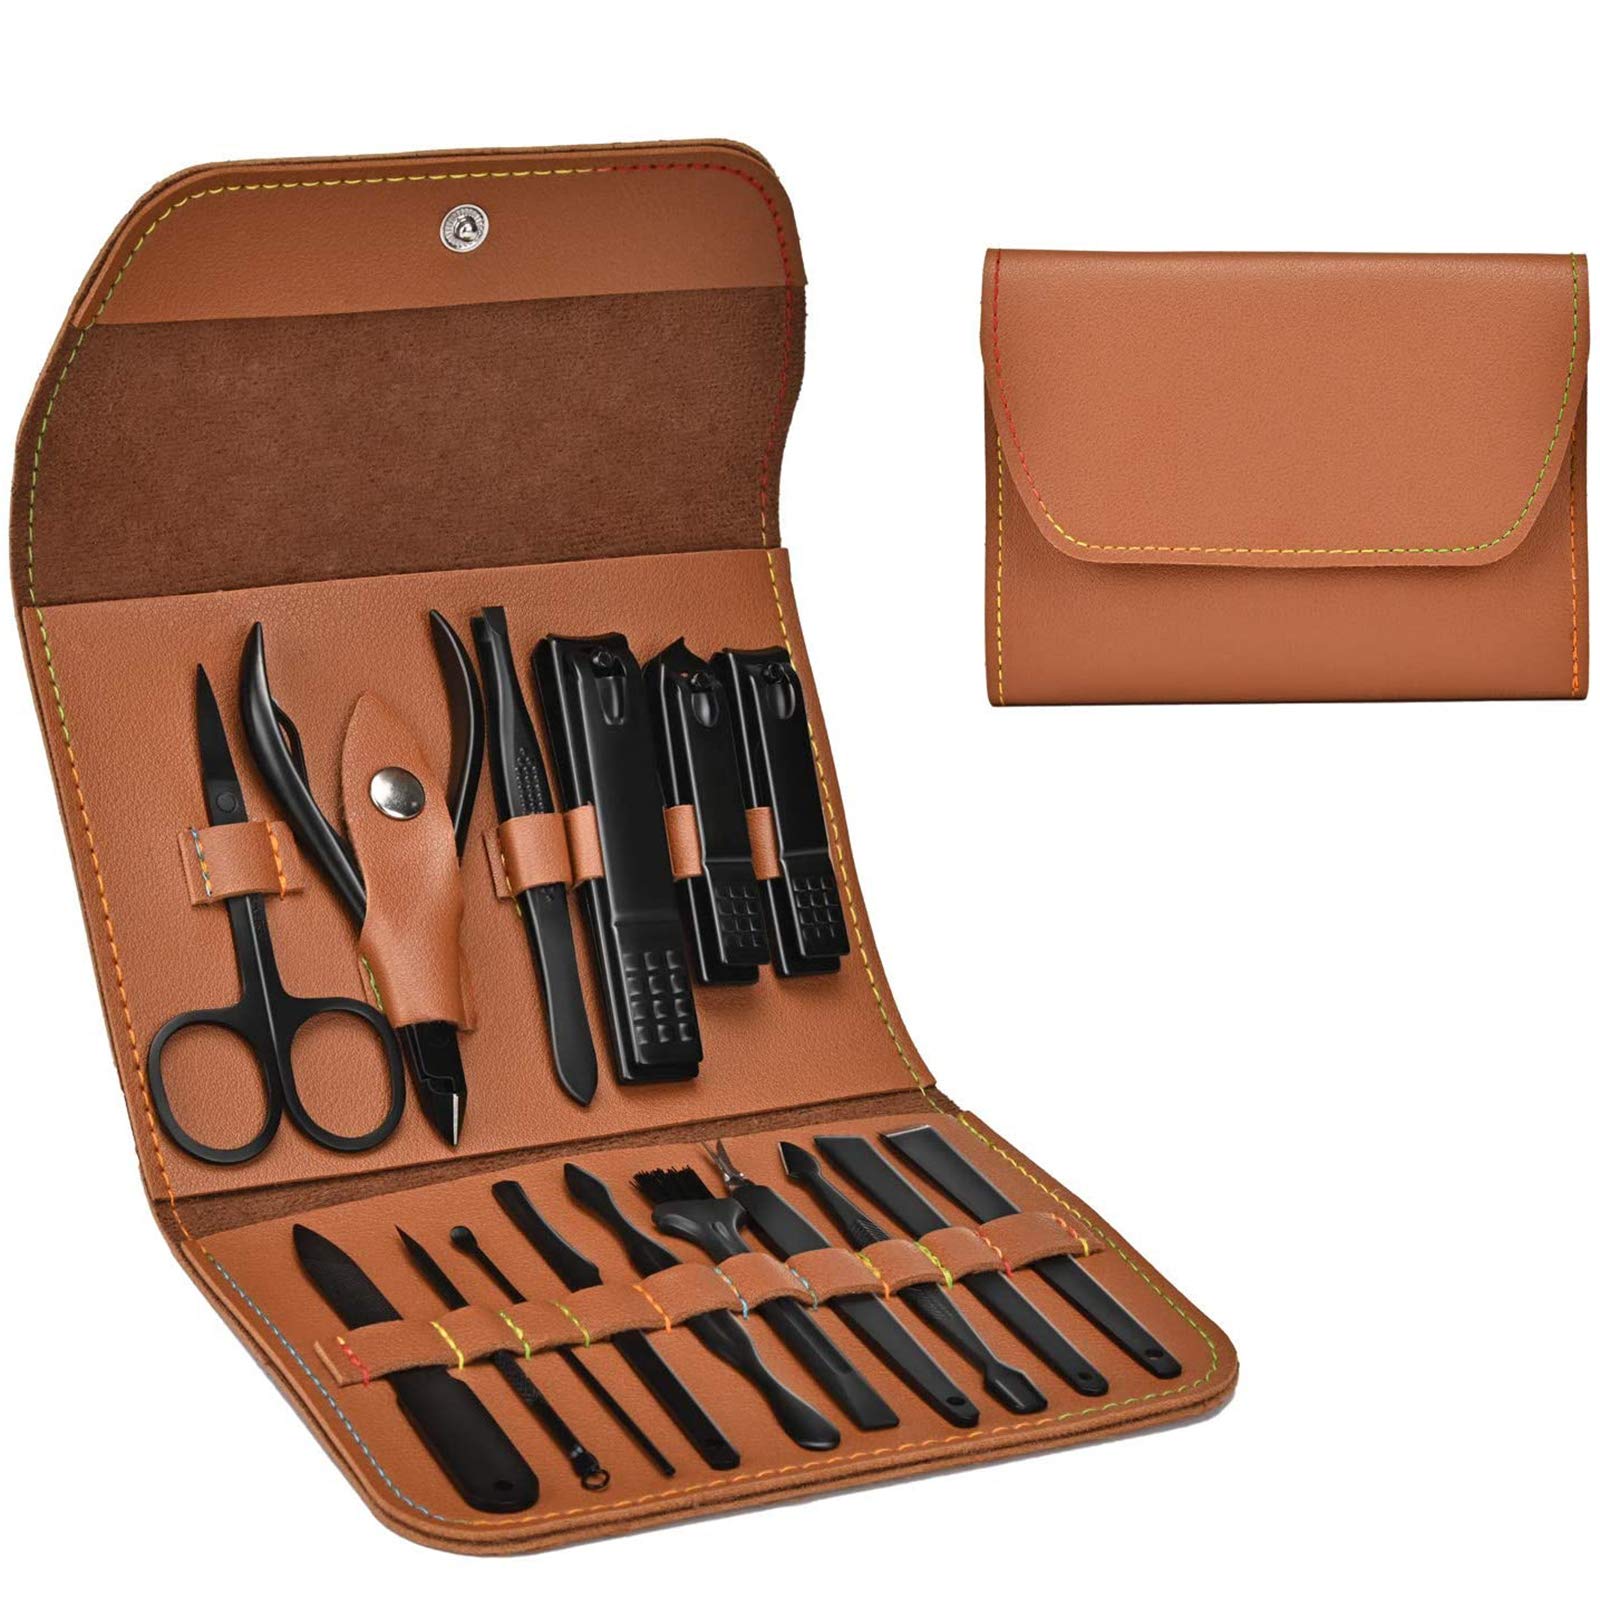  Manicure Set Manicure Pedicure Kit Nail Grooming Kit for Men,  7 in 1 Travel Nail Kit Men Nail Clipper Set for Fingernail Toenail - Black  : Beauty & Personal Care